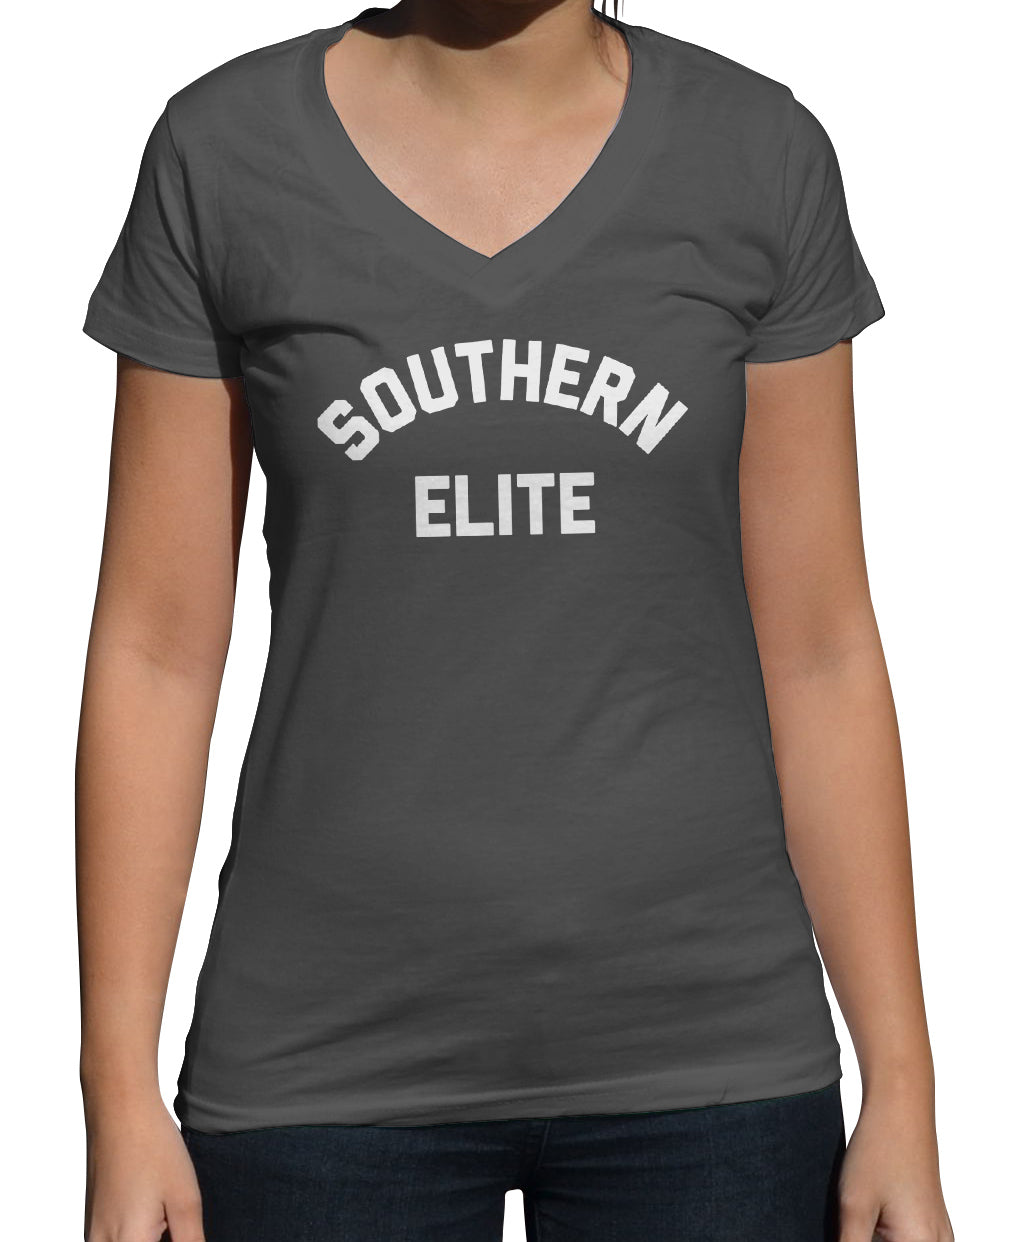 Women's Southern Elite Vneck T-Shirt